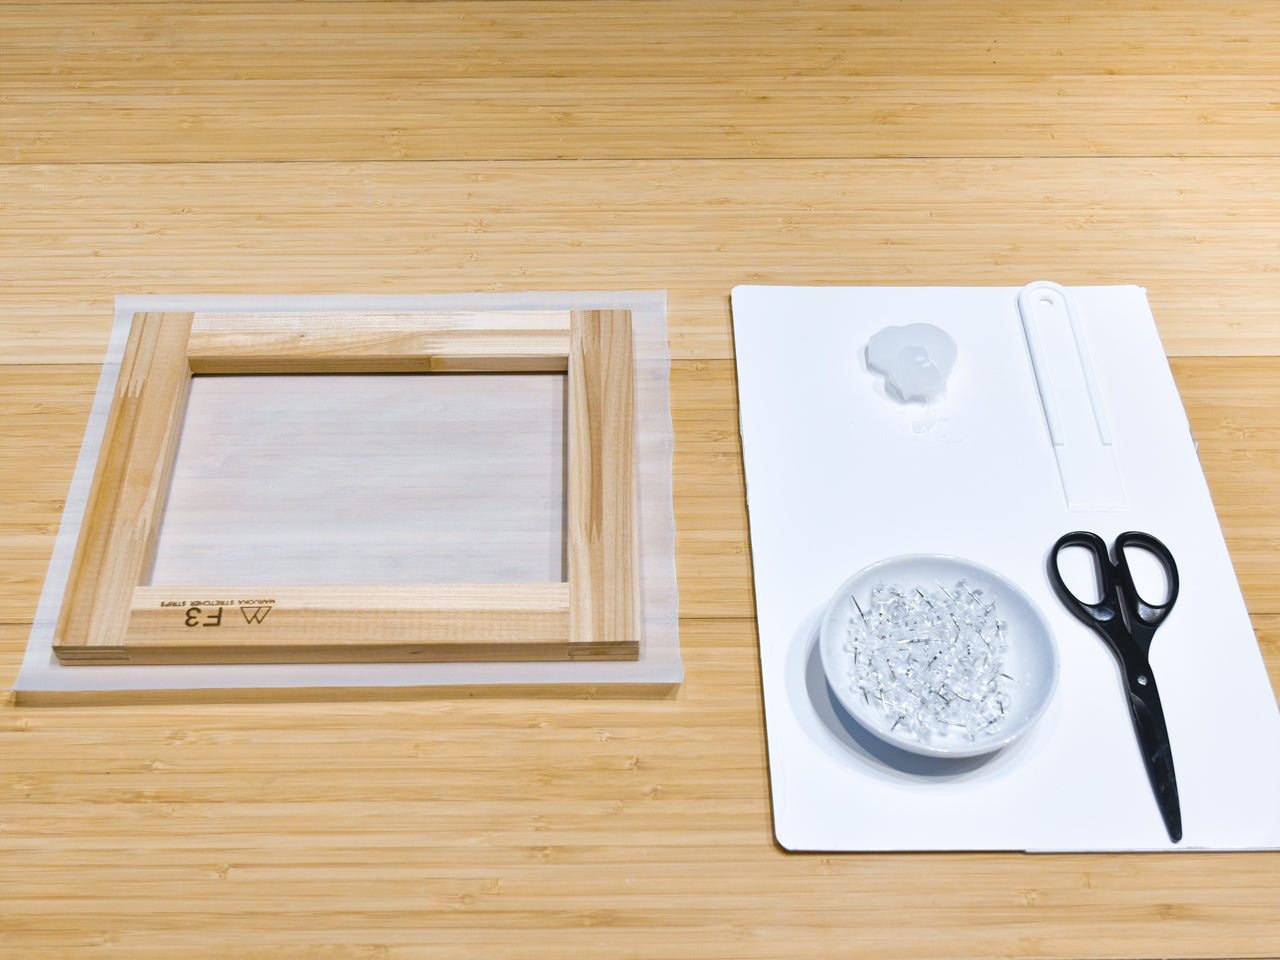 絹枠 F10号: 絵絹を張るための木枠 - アート用品